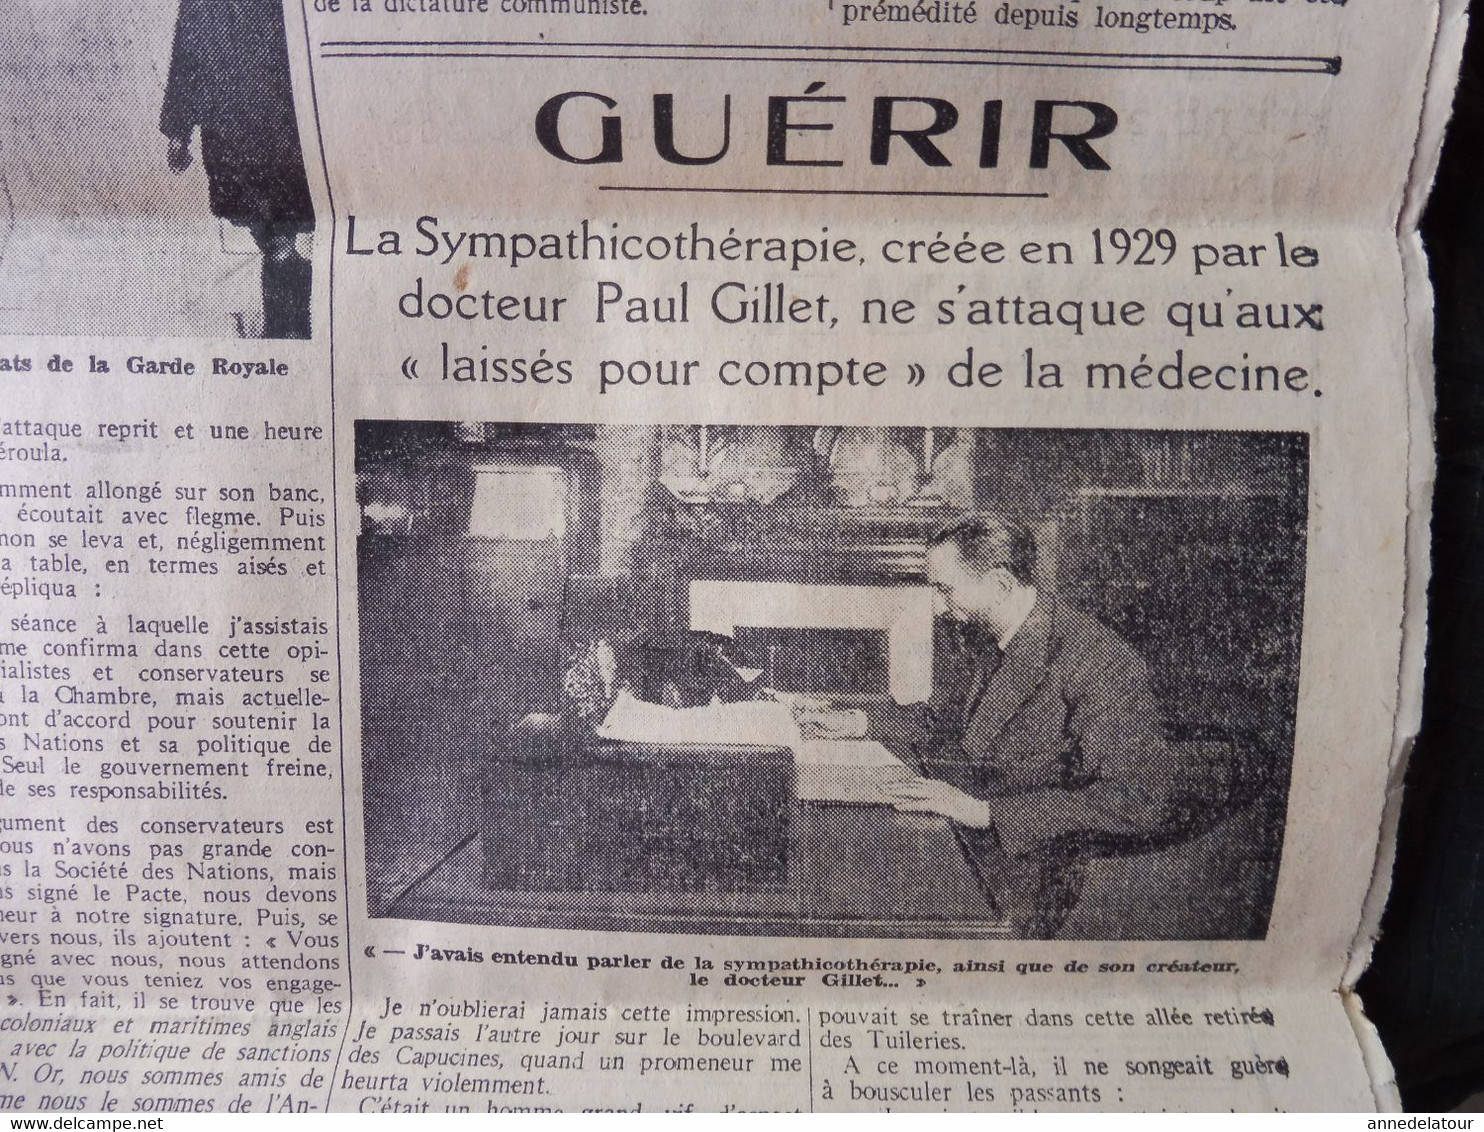 1935 L'AMI DU PEUPLE: Terrible accident avion Croydon; Sympathicothérapie; Trouble à Somowrostro (Espagne); Etc